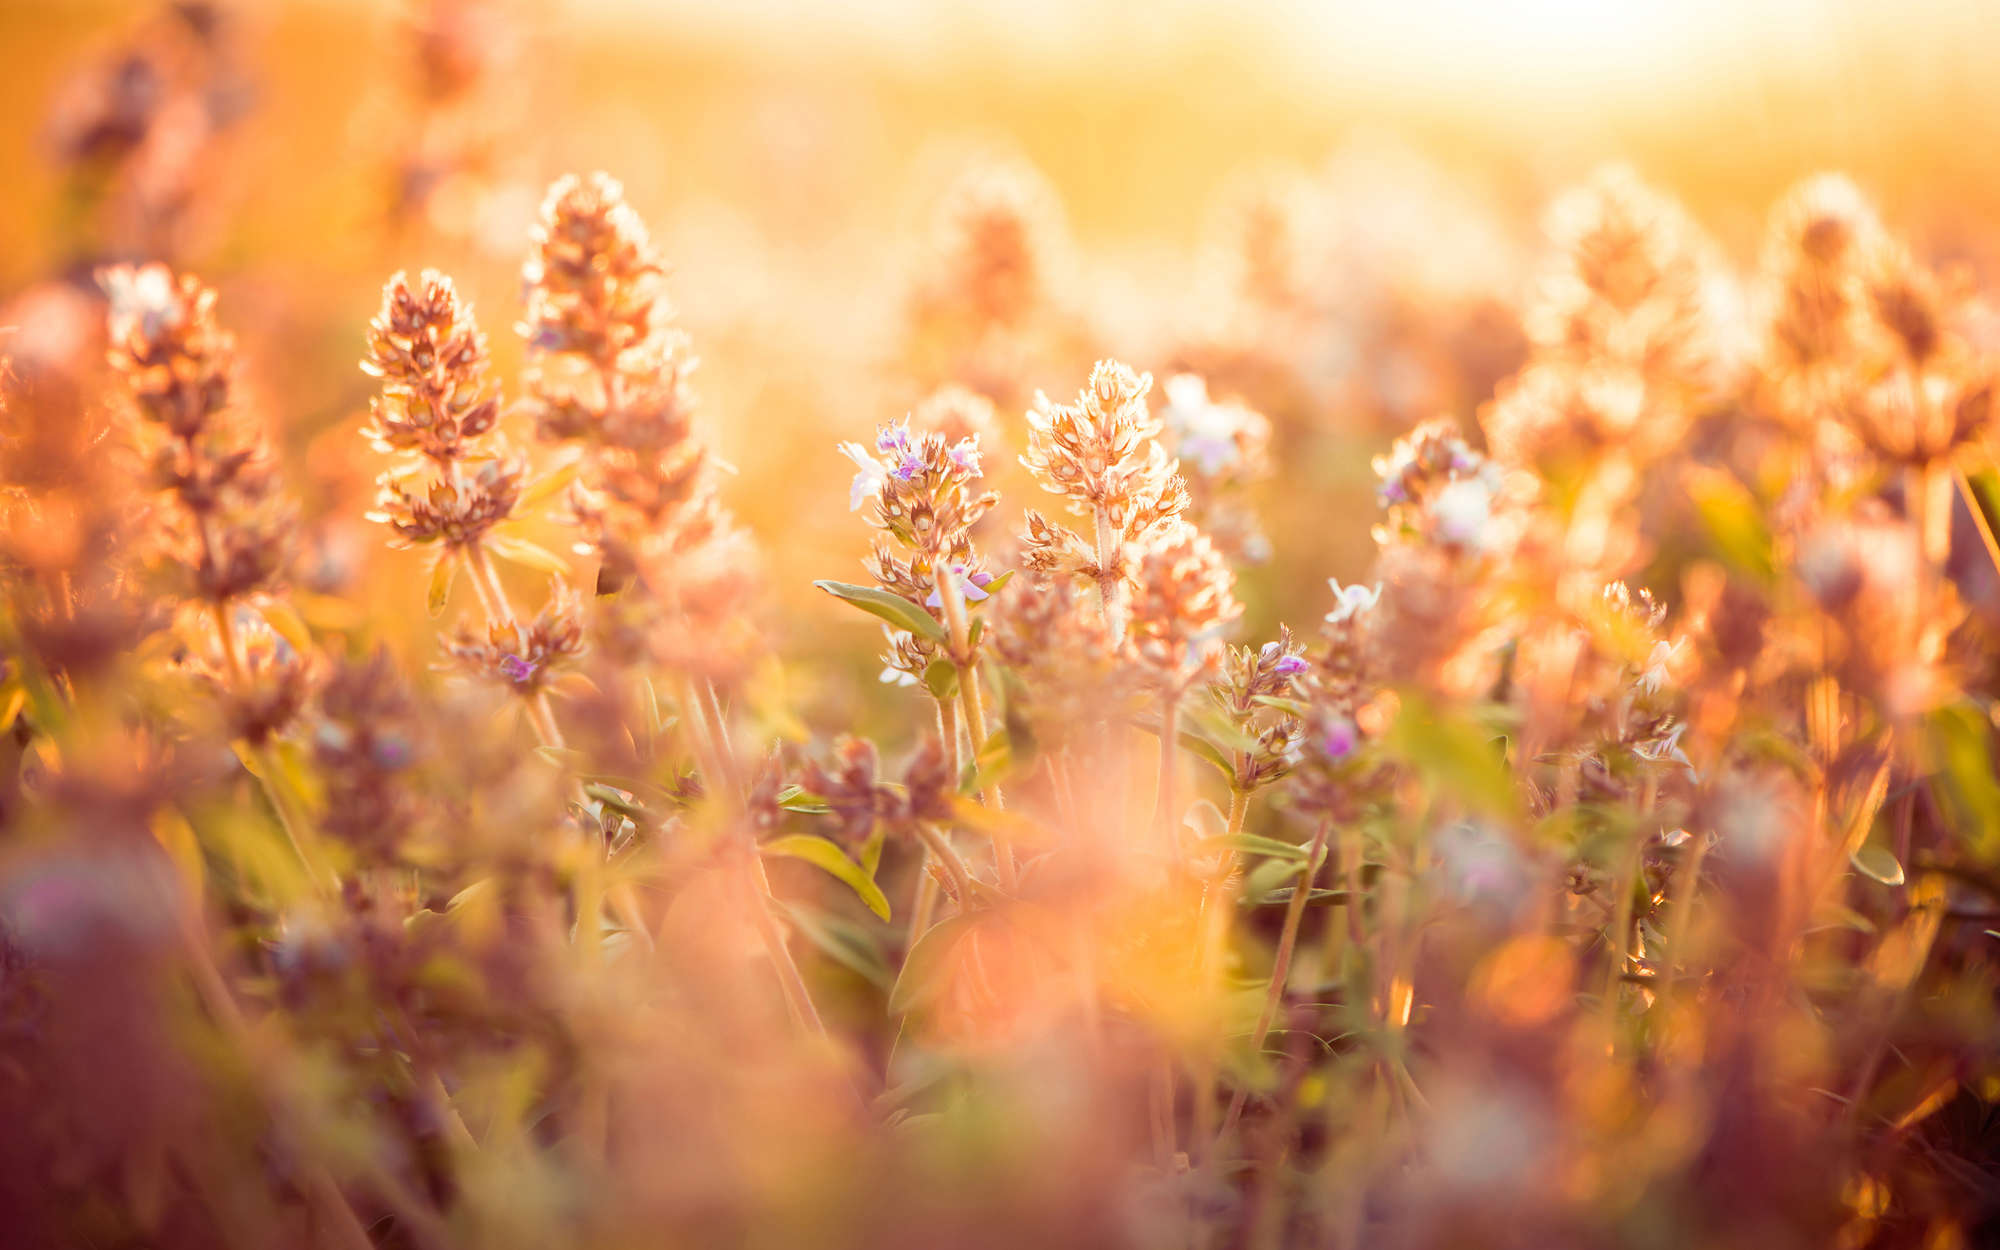             Florale Fototapete Feld mit Blumen und Gräsern – Perlmutt Glattvlies
        